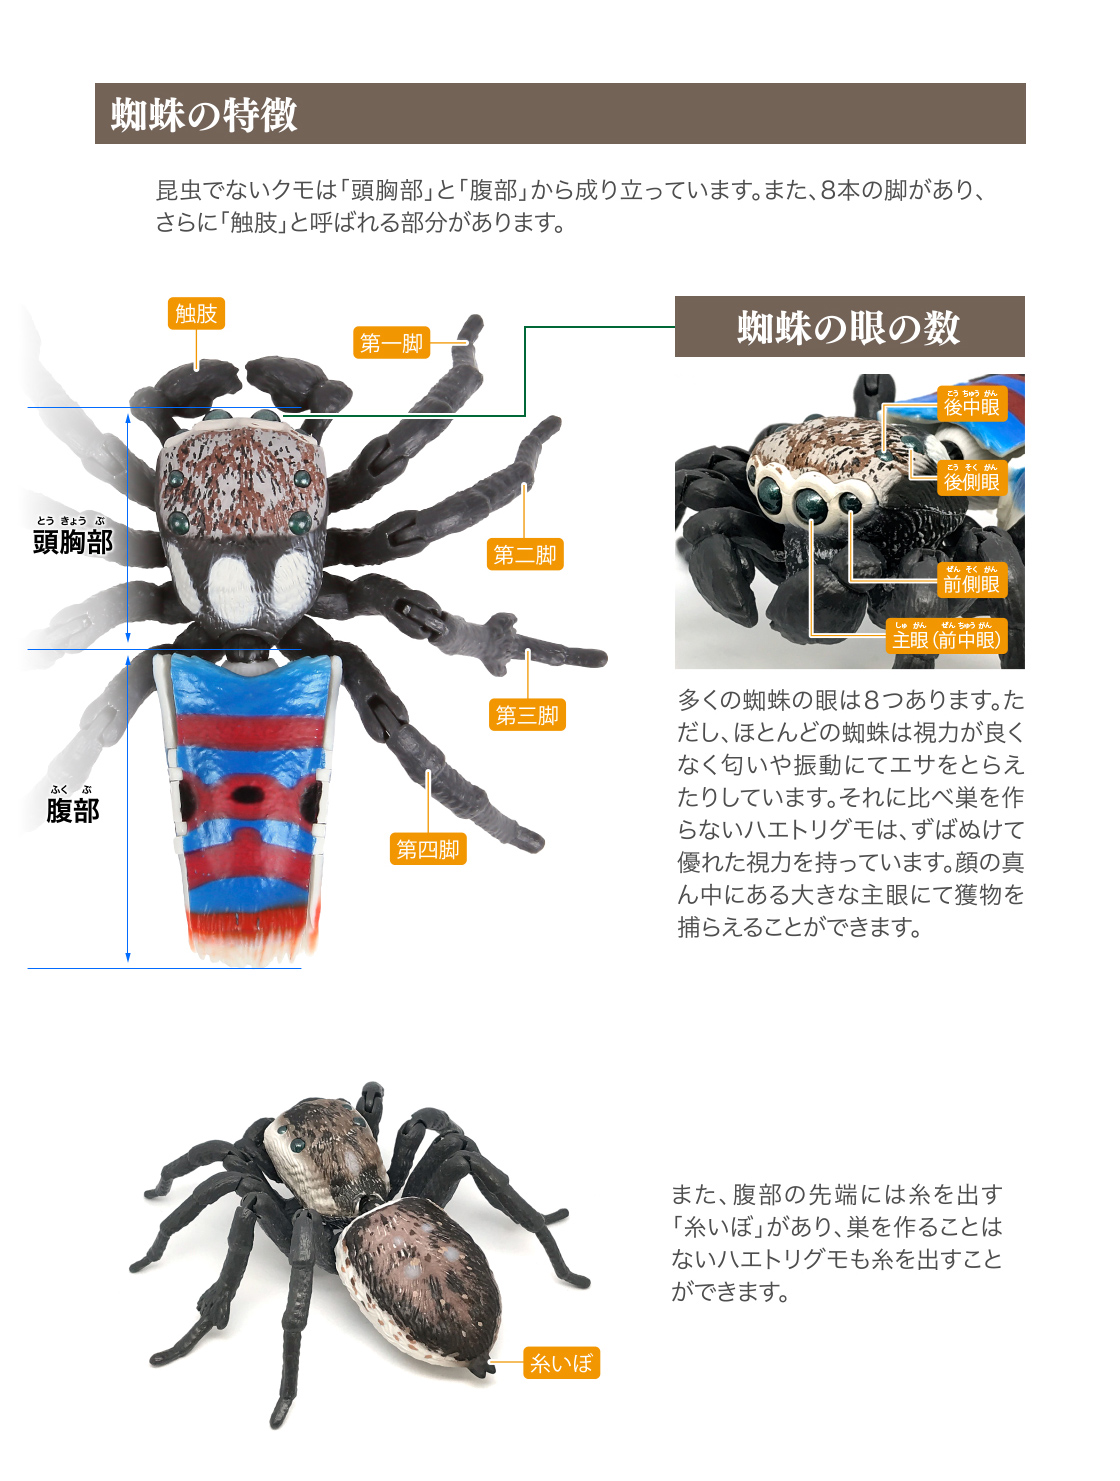 蜘蛛の特徴